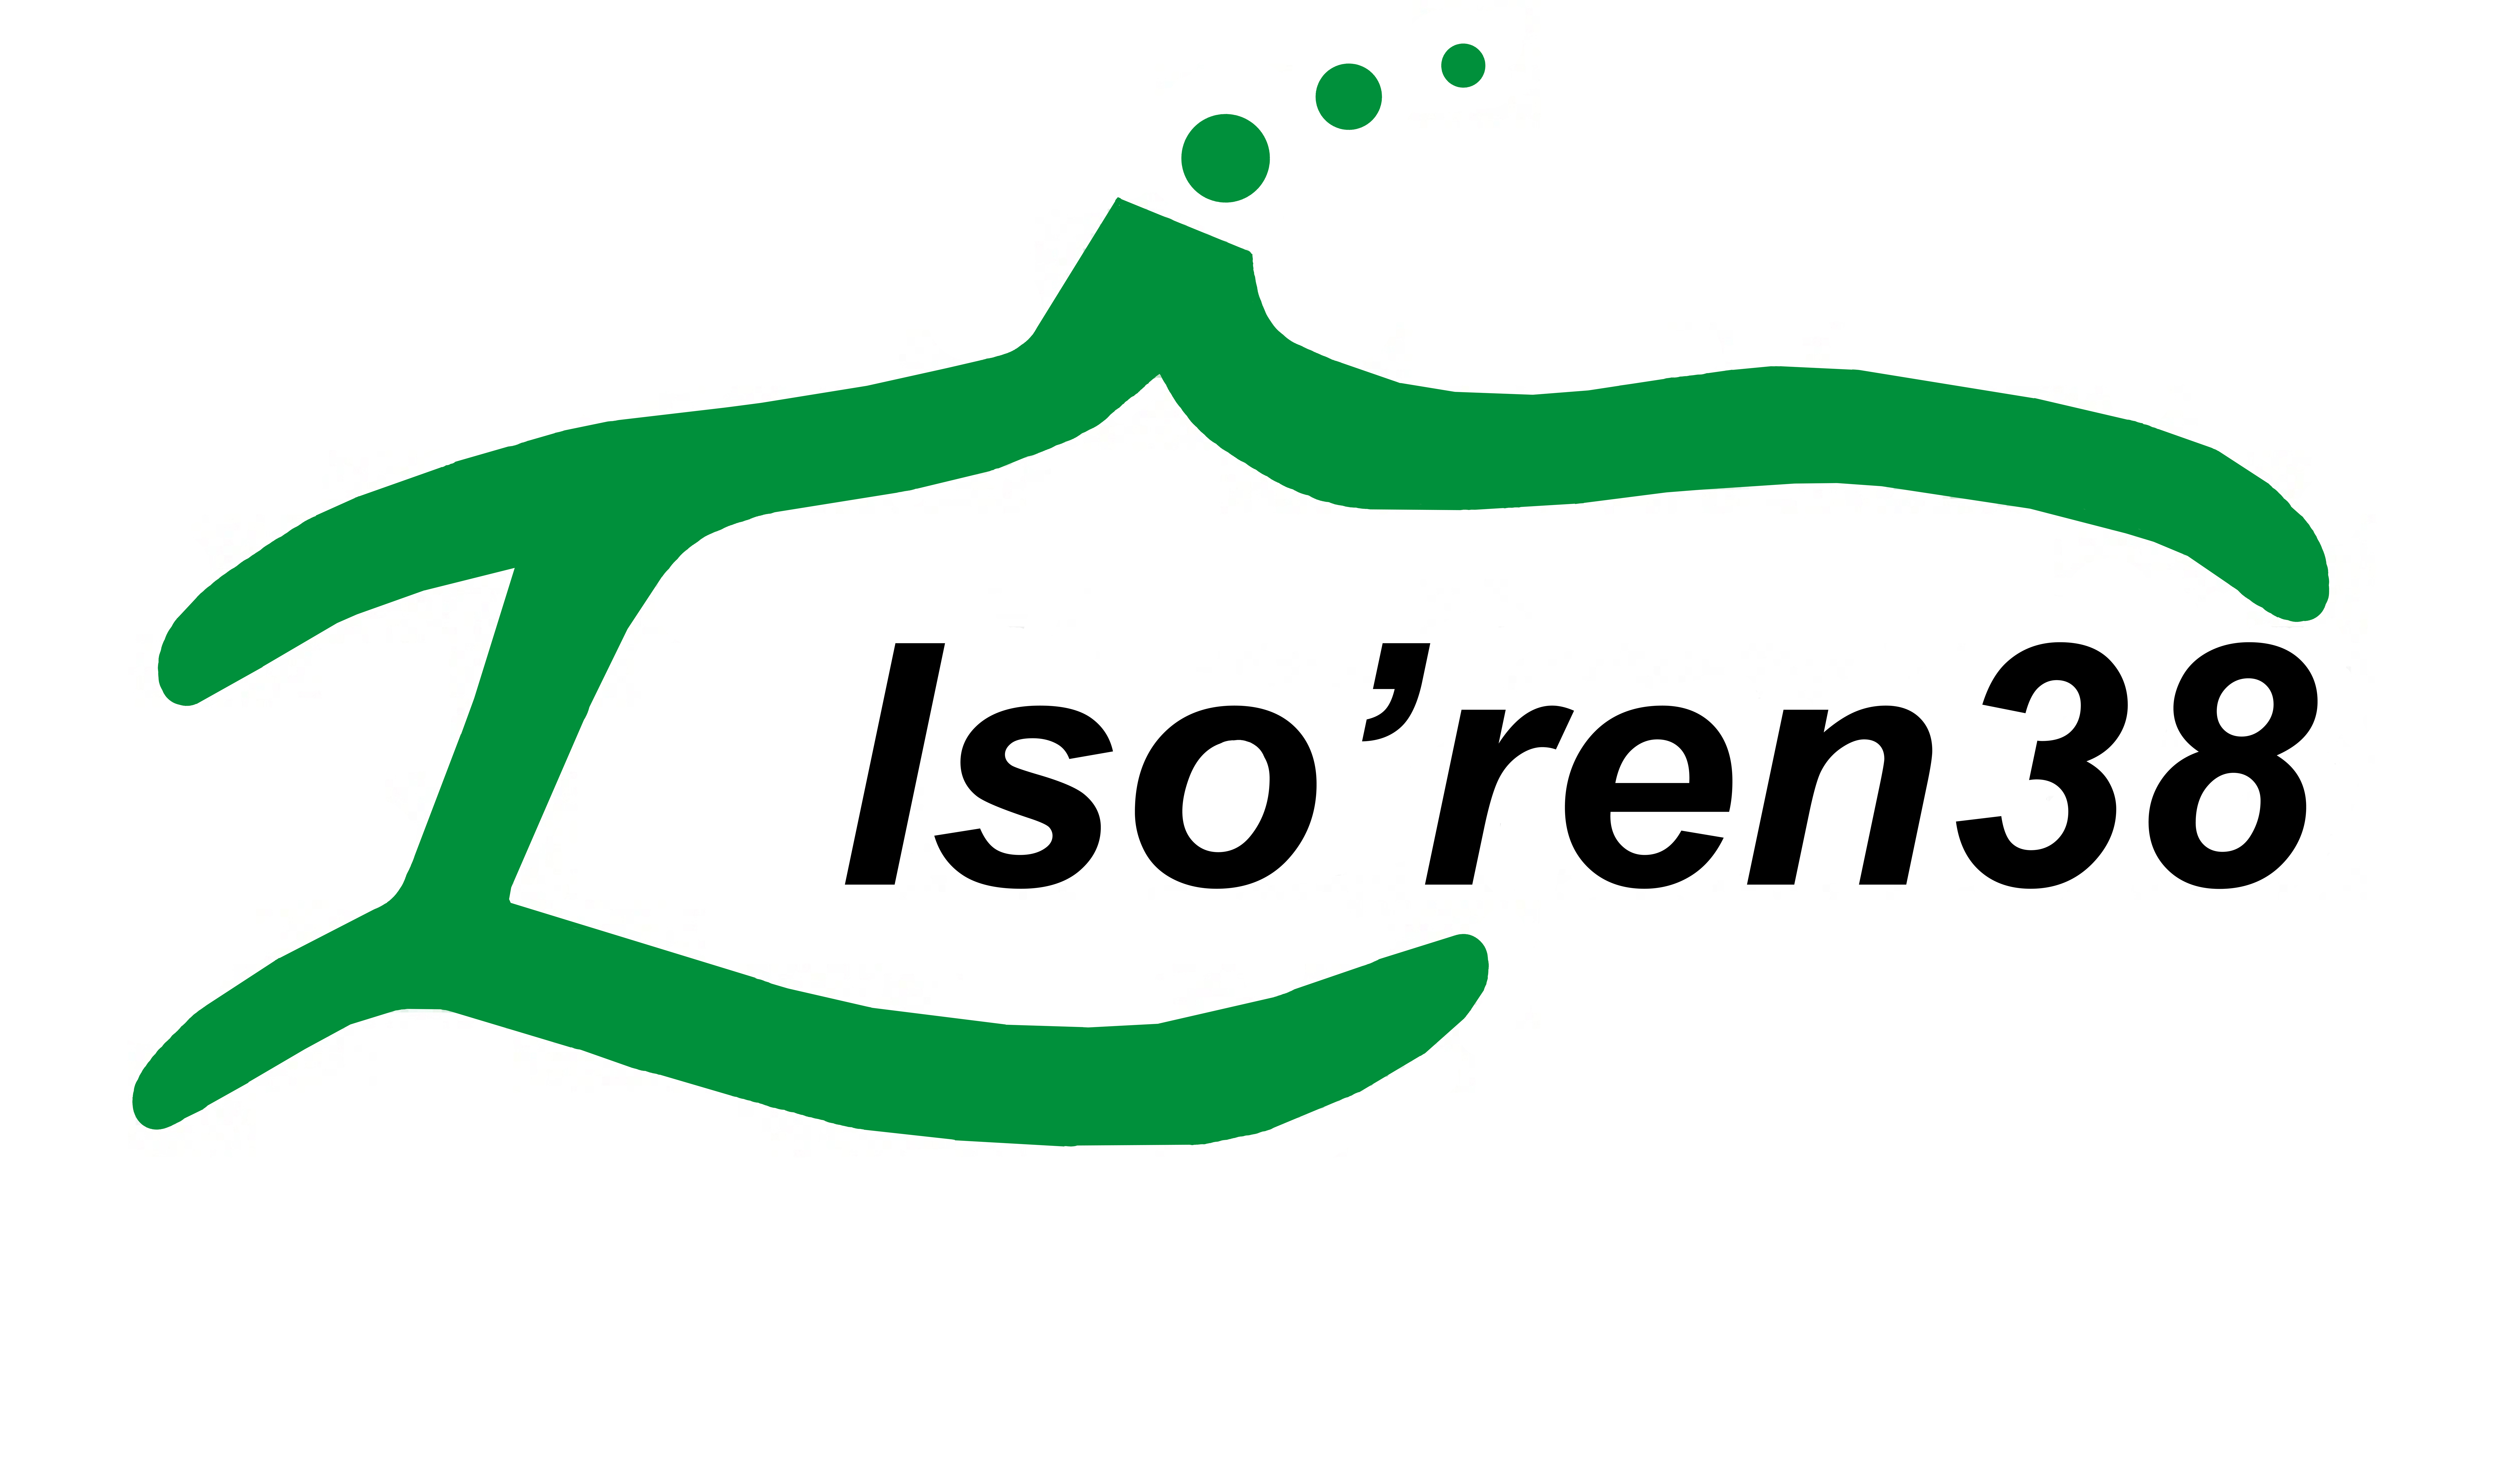 ISO'REN 38